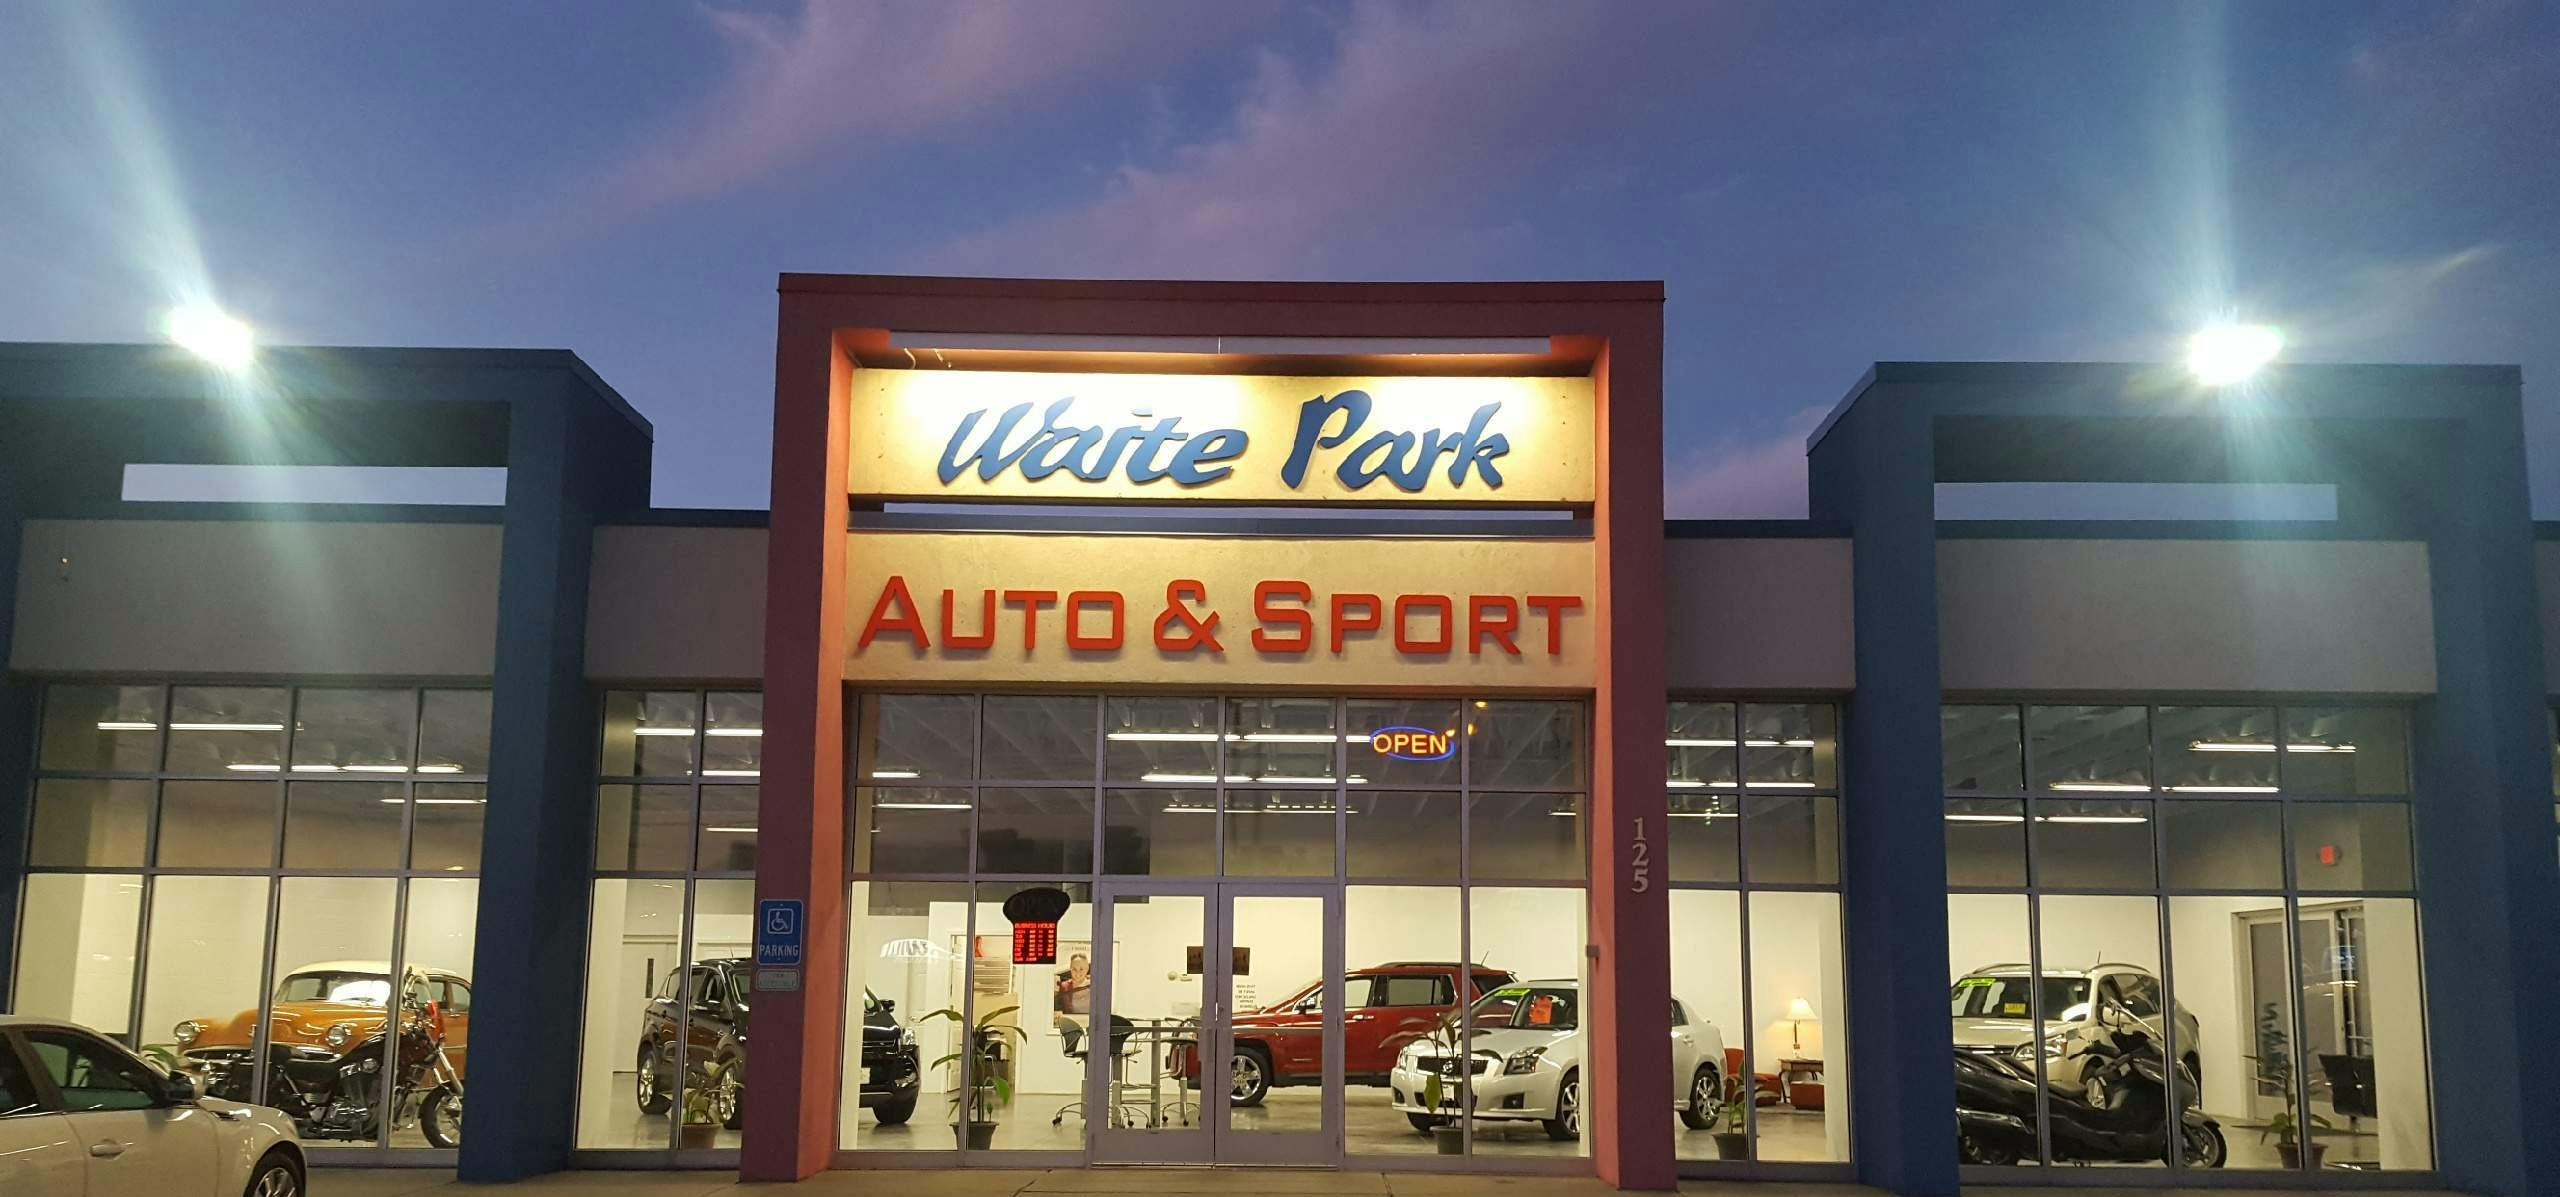 building front Waite Park Auto & Sport